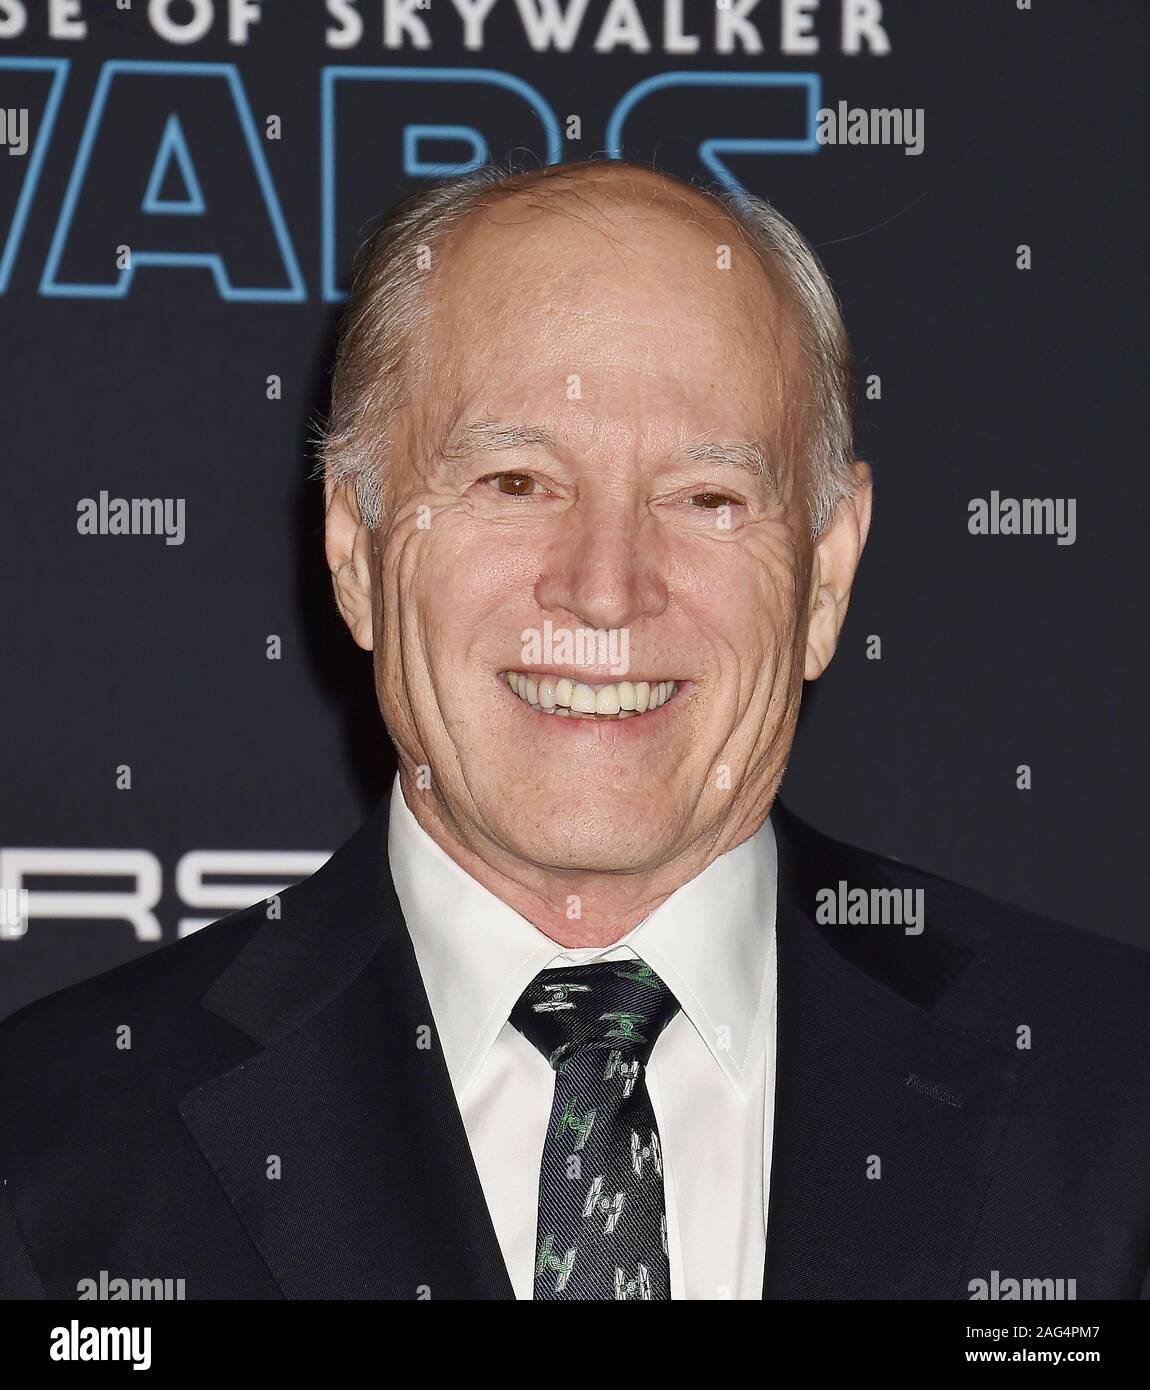 HOLLYWOOD, CA - le 16 décembre : Frank Marshall assiste à la première de Disney's 'Star Wars : La montée de Skywalker' au El Capitan Theatre le 16 décembre 2019 à Hollywood, Californie. Banque D'Images